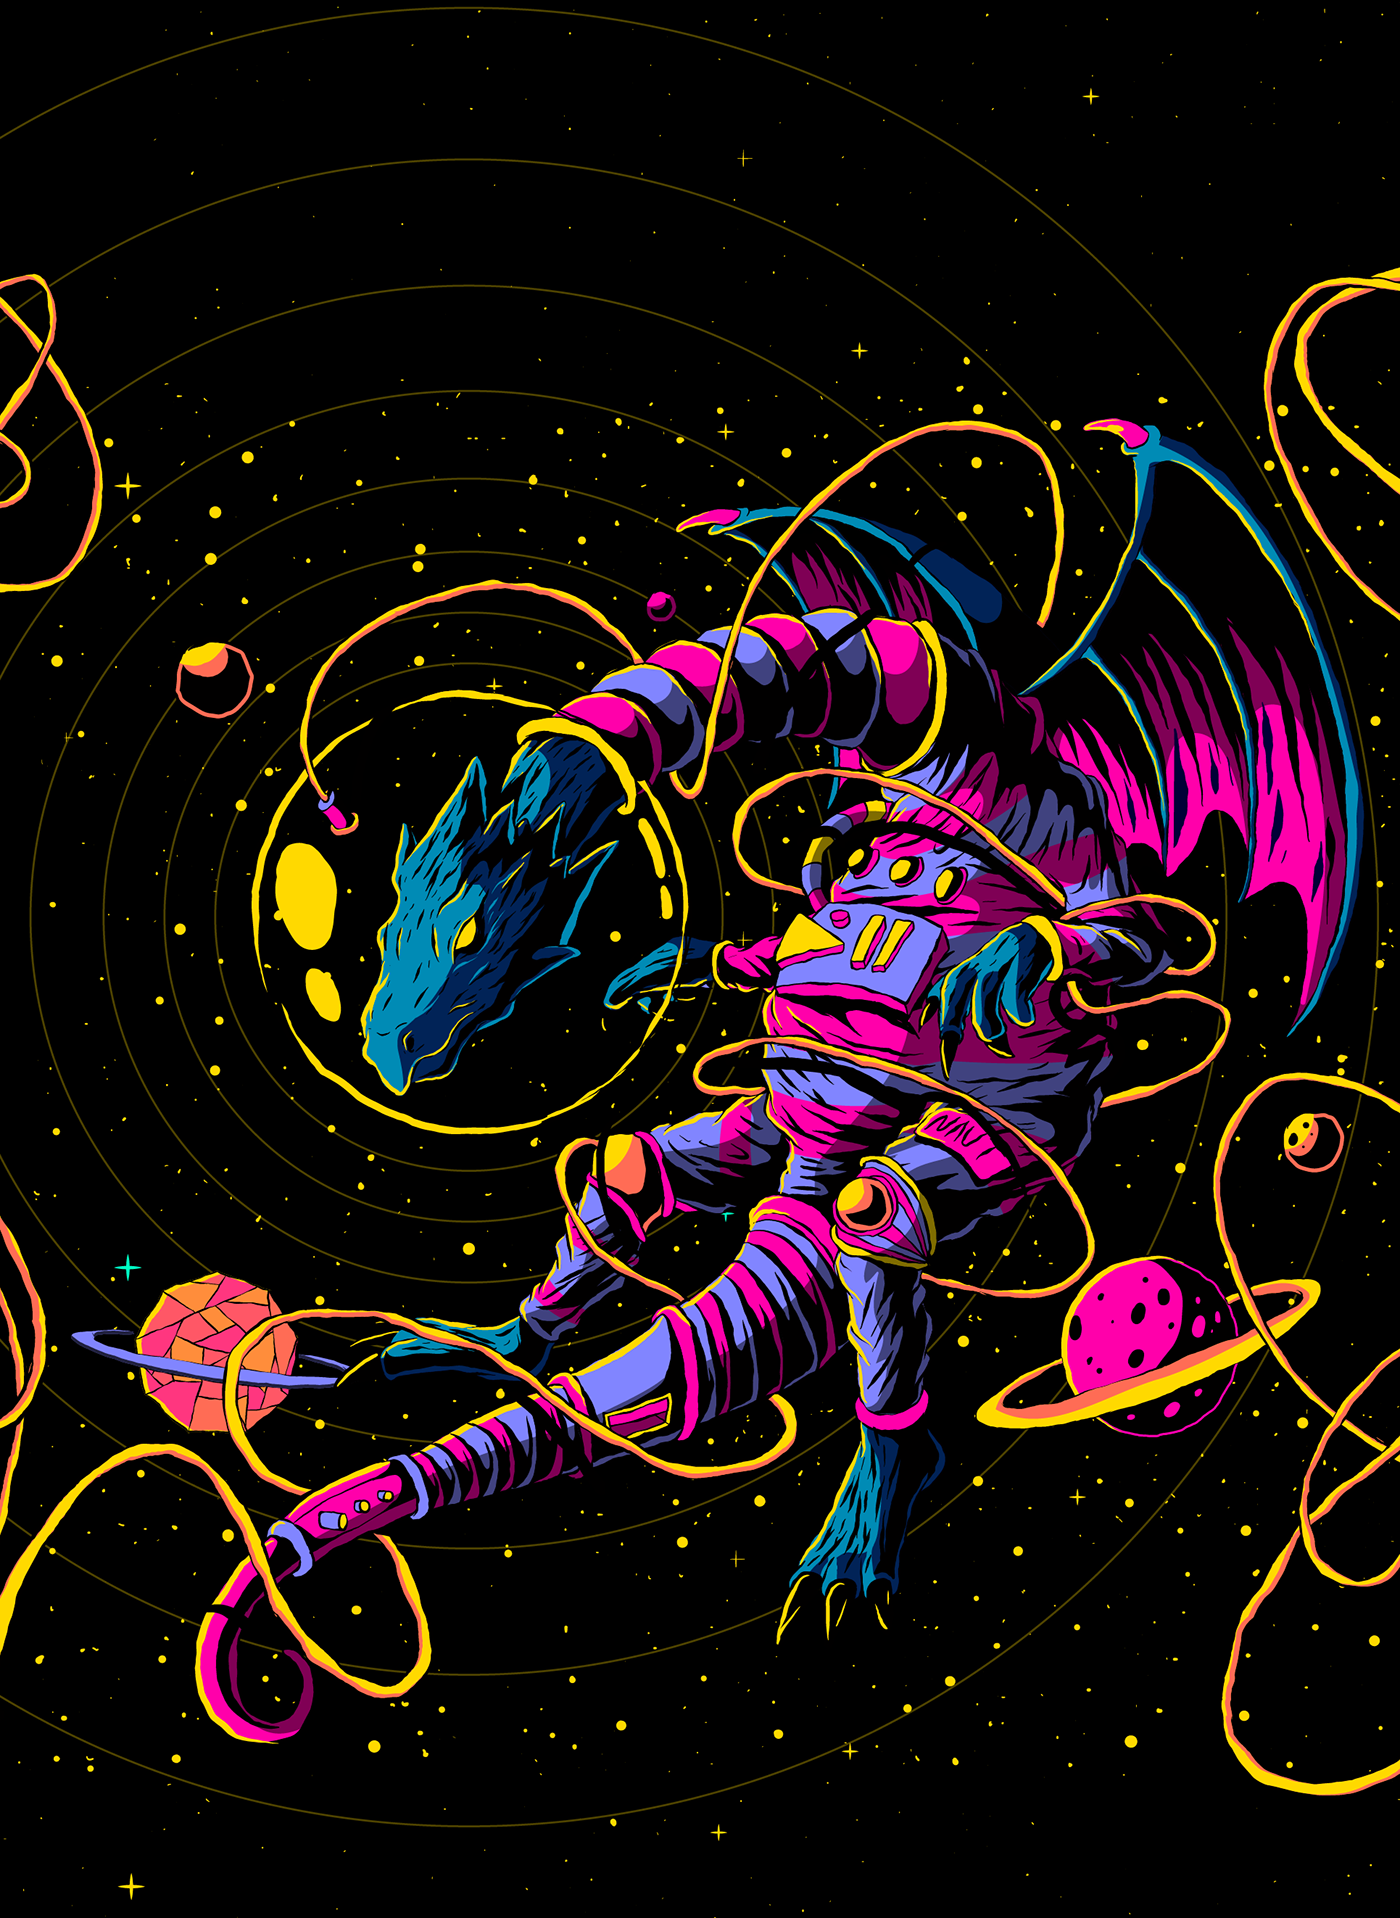 alien astronaut dragon galaxy stars vector vector art Vector Illustration vectorart